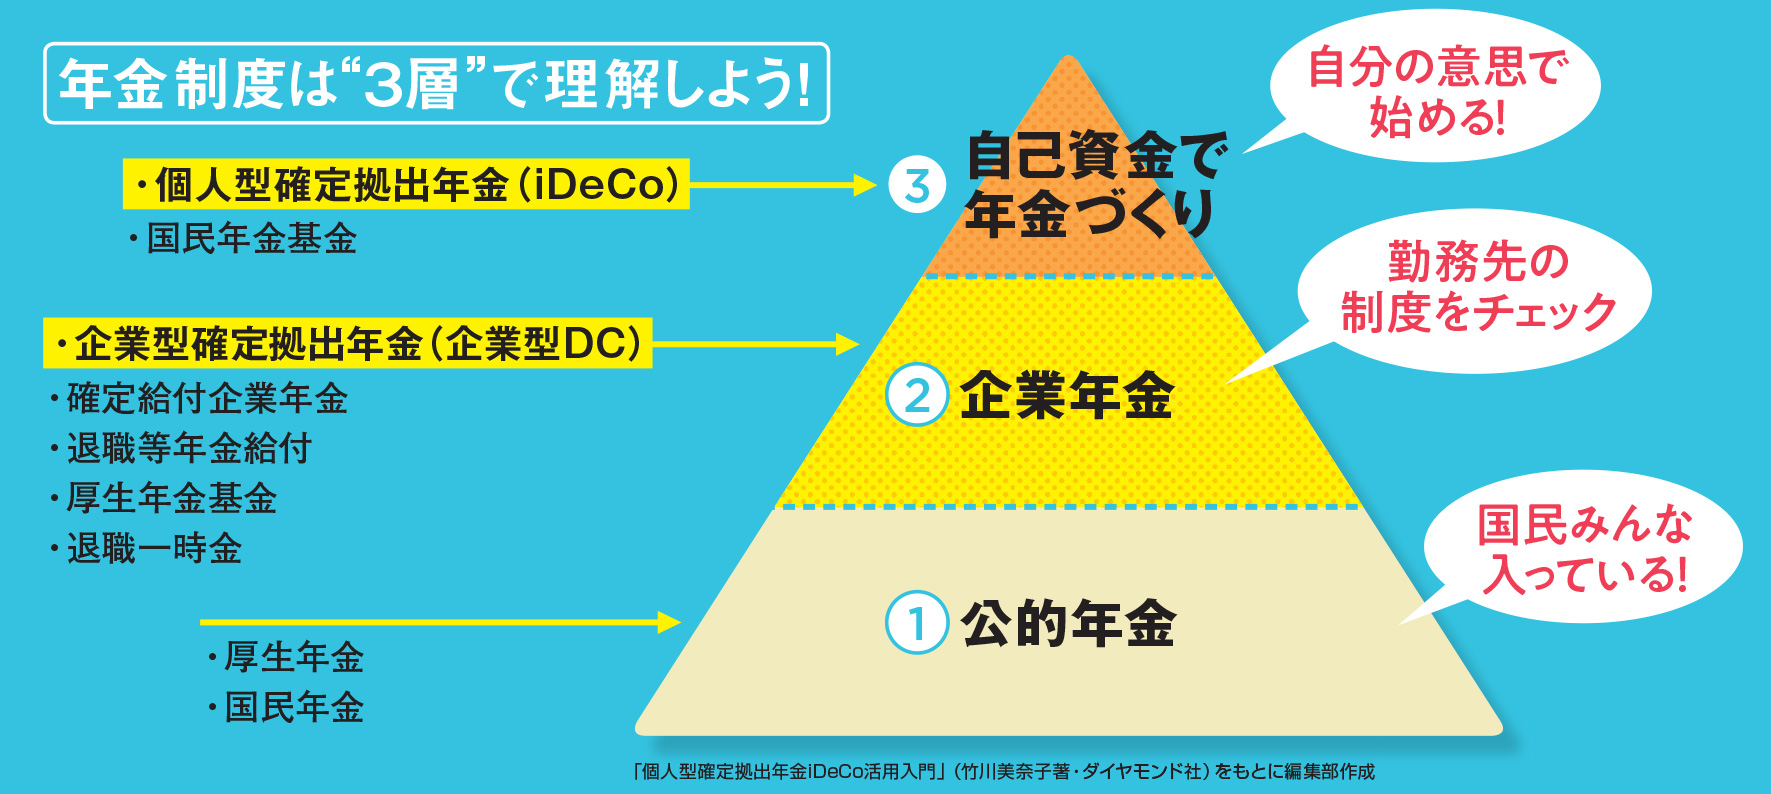 日本の年金制度は 国 会社 自分 3層構造 と理解して じぶん年金 Ideco の重要性を確認しよう 公的年金 企業年金 じぶん年金 の3つの違いを解説 Ideco 個人型確定拠出年金 おすすめ比較 徹底解説 年 ザイ オンライン